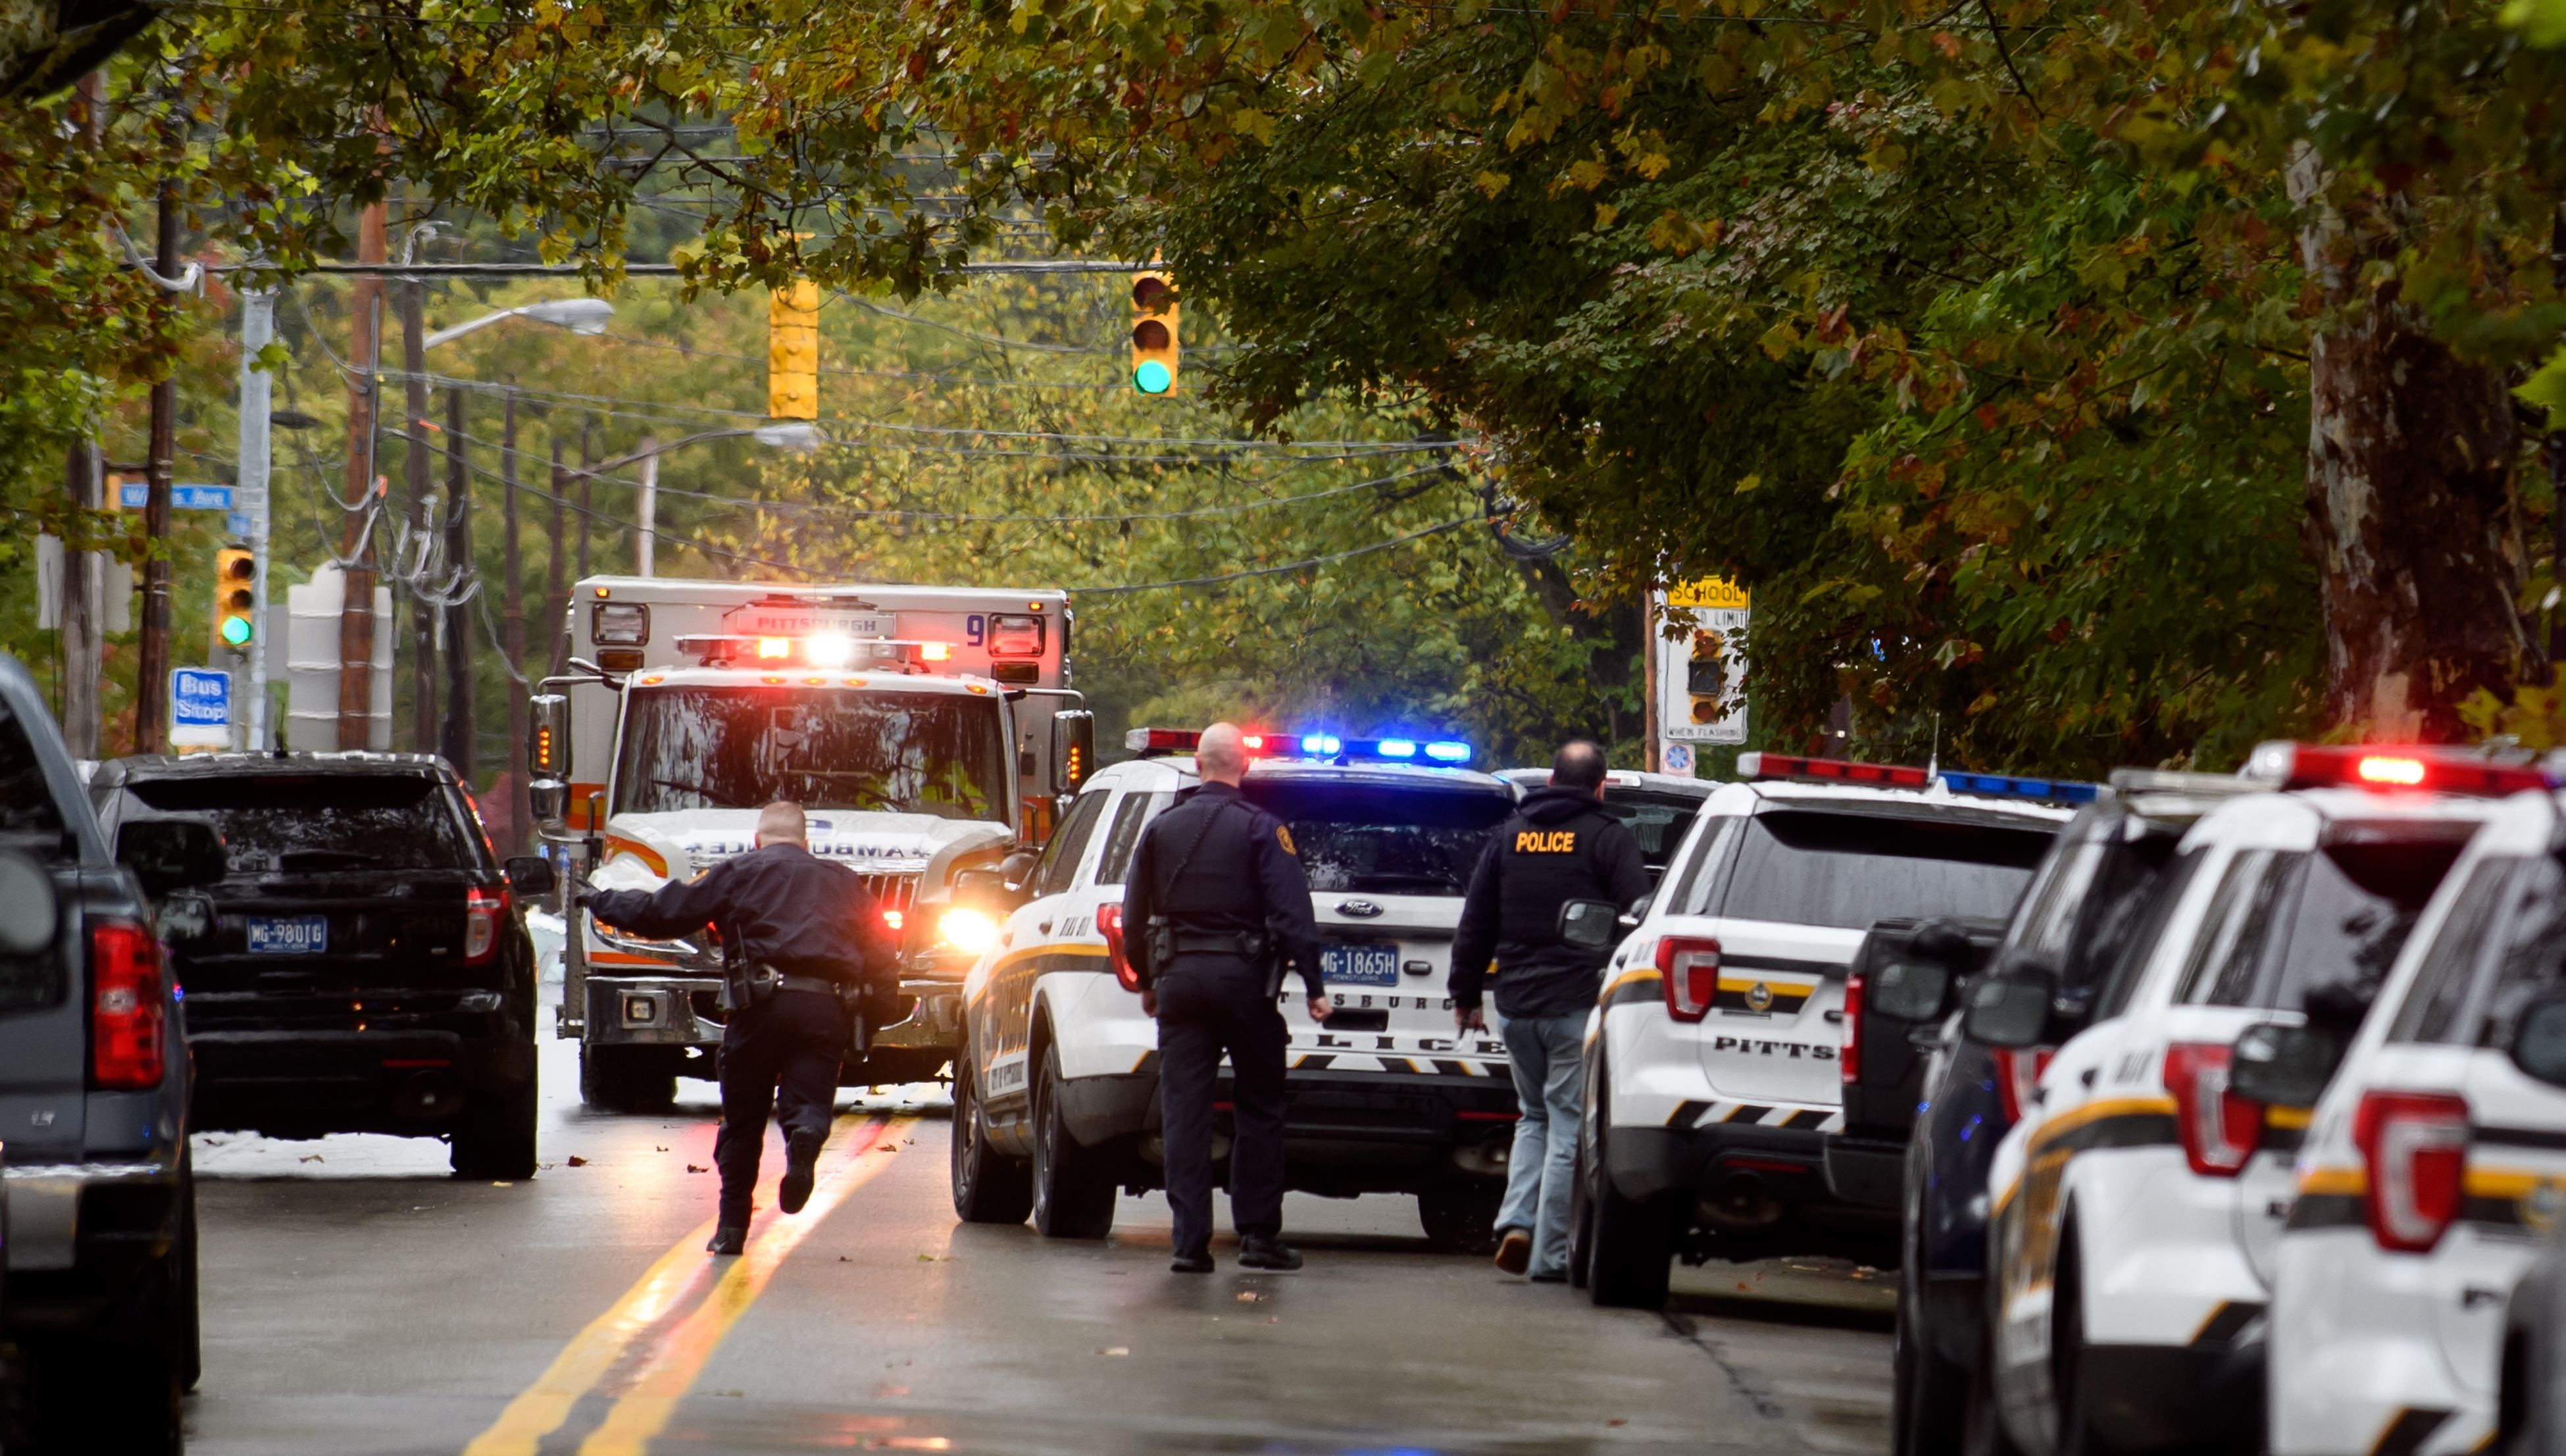 Стрельба в синагоге в Питтсбурге: что случилось - новости 27.10.2018